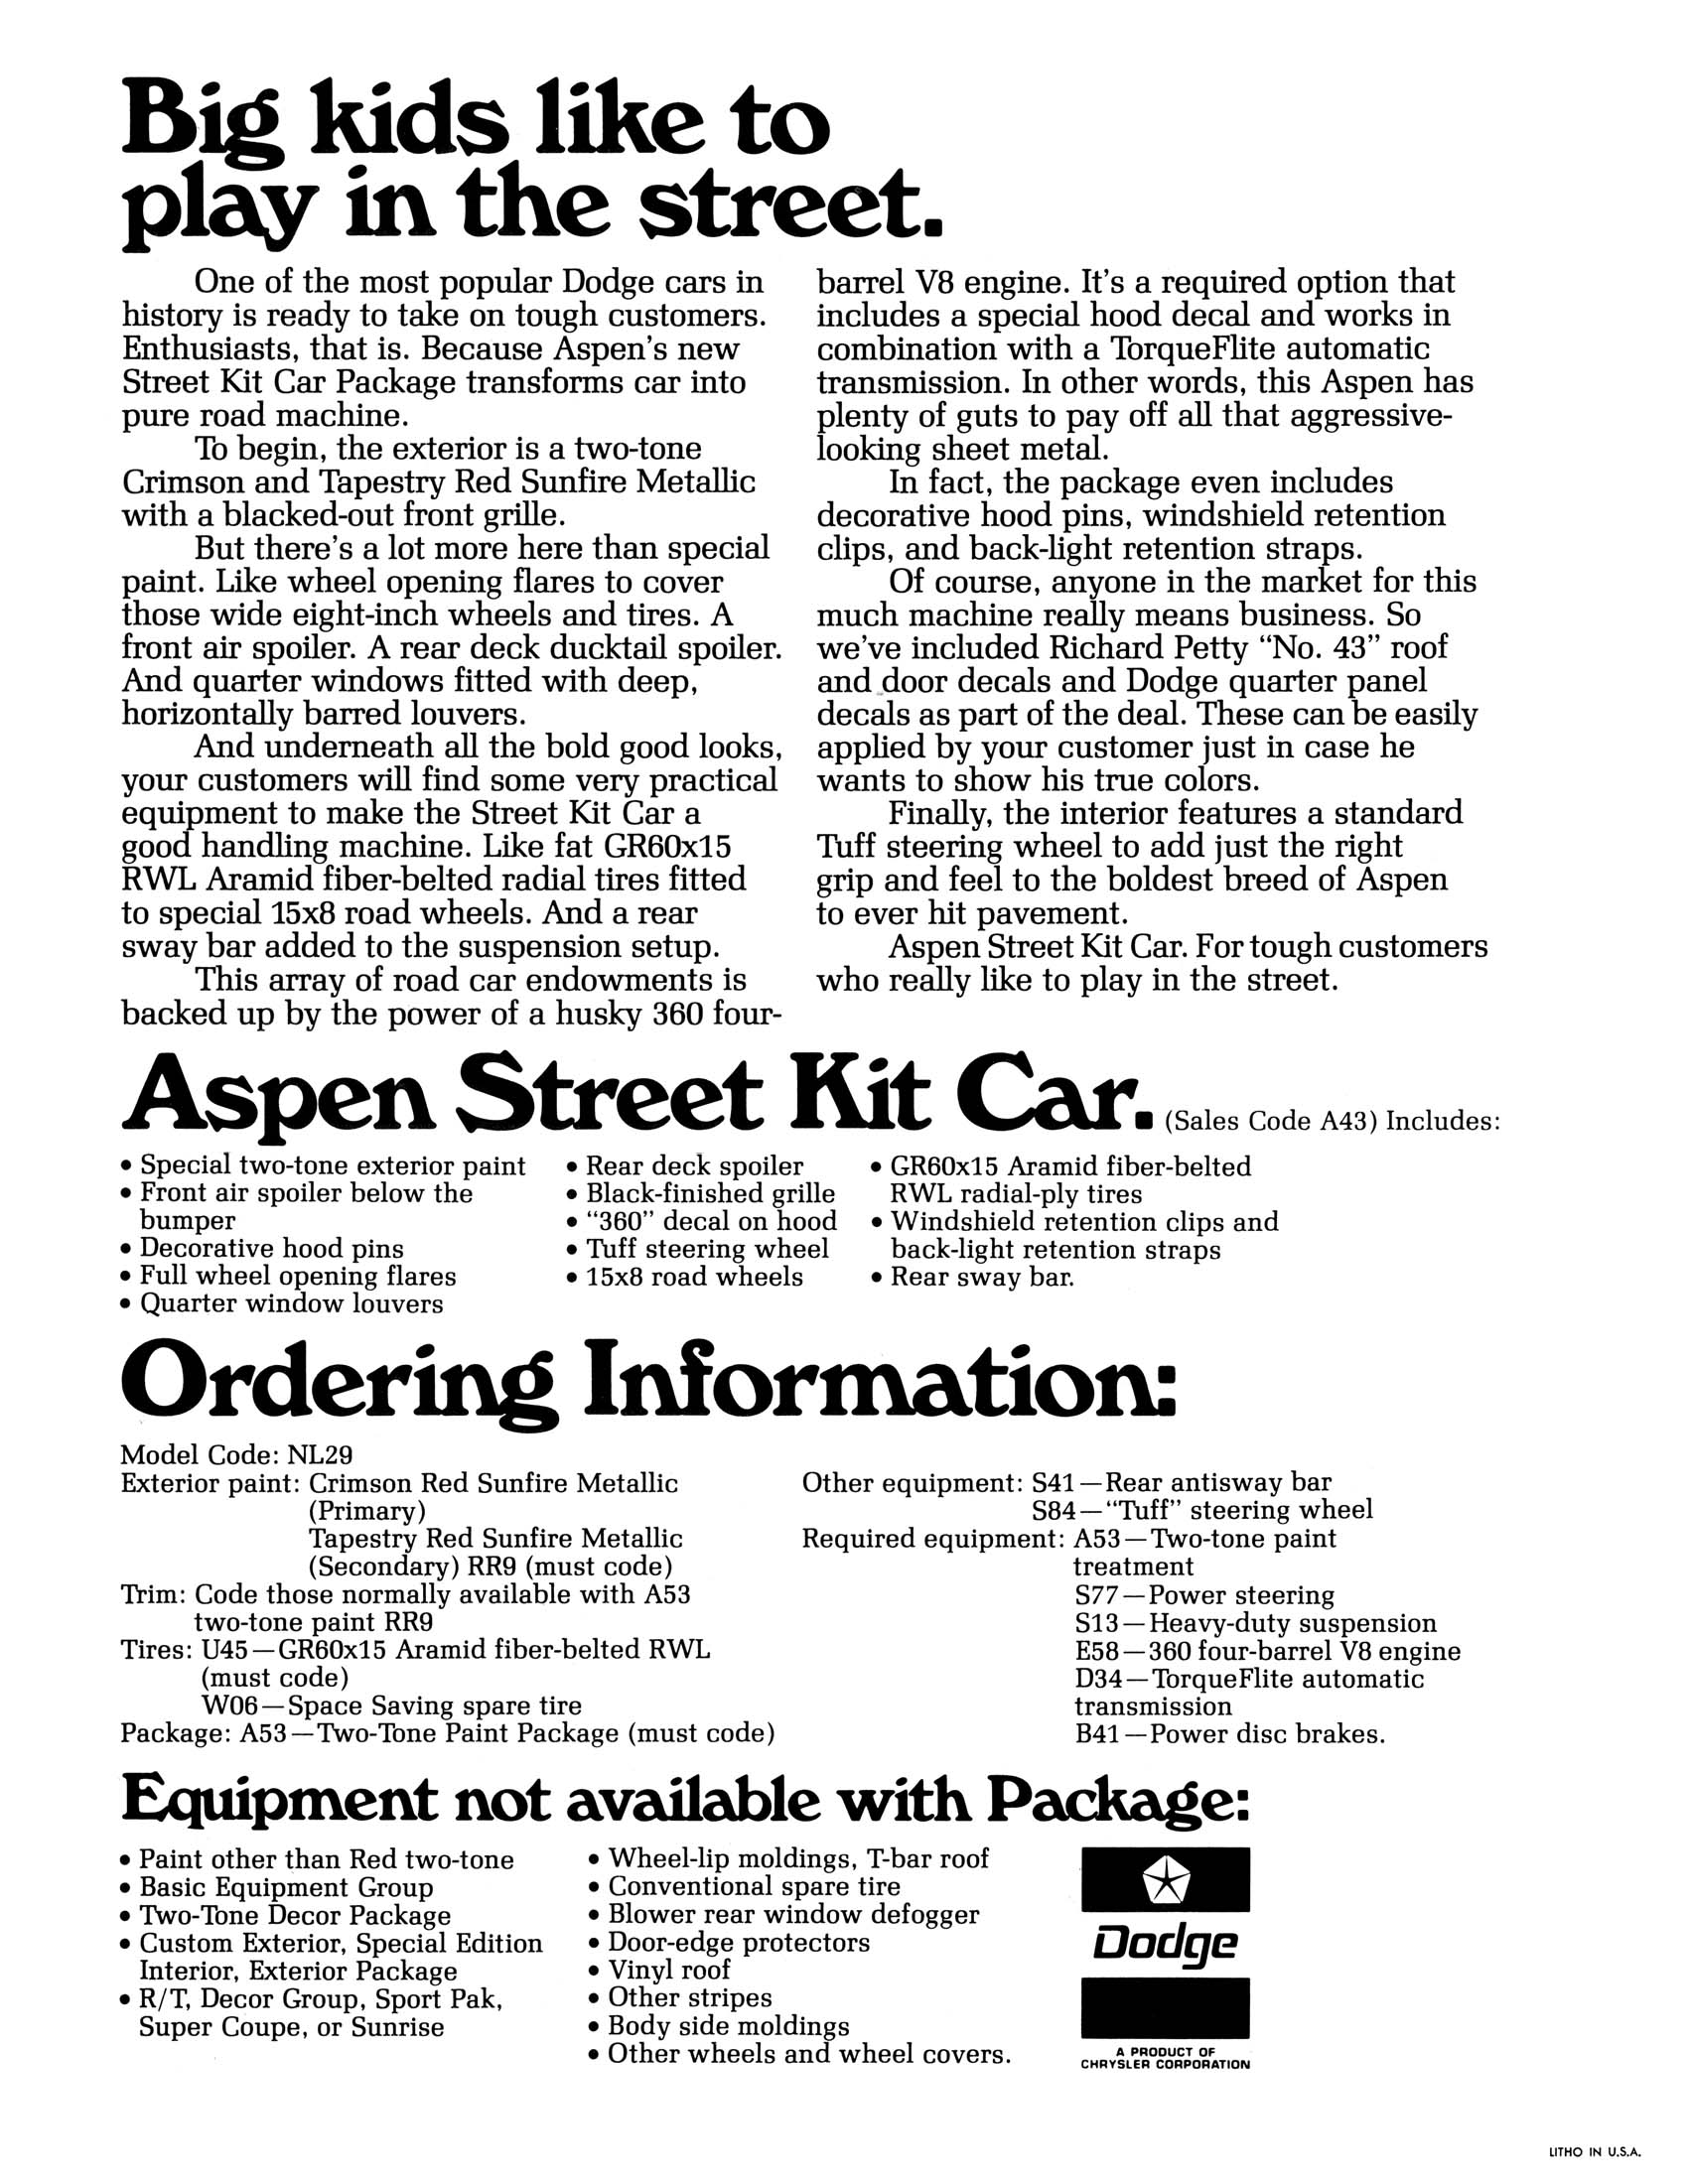 1978_Dodge_Aspen_Street_Kit_Poster-02